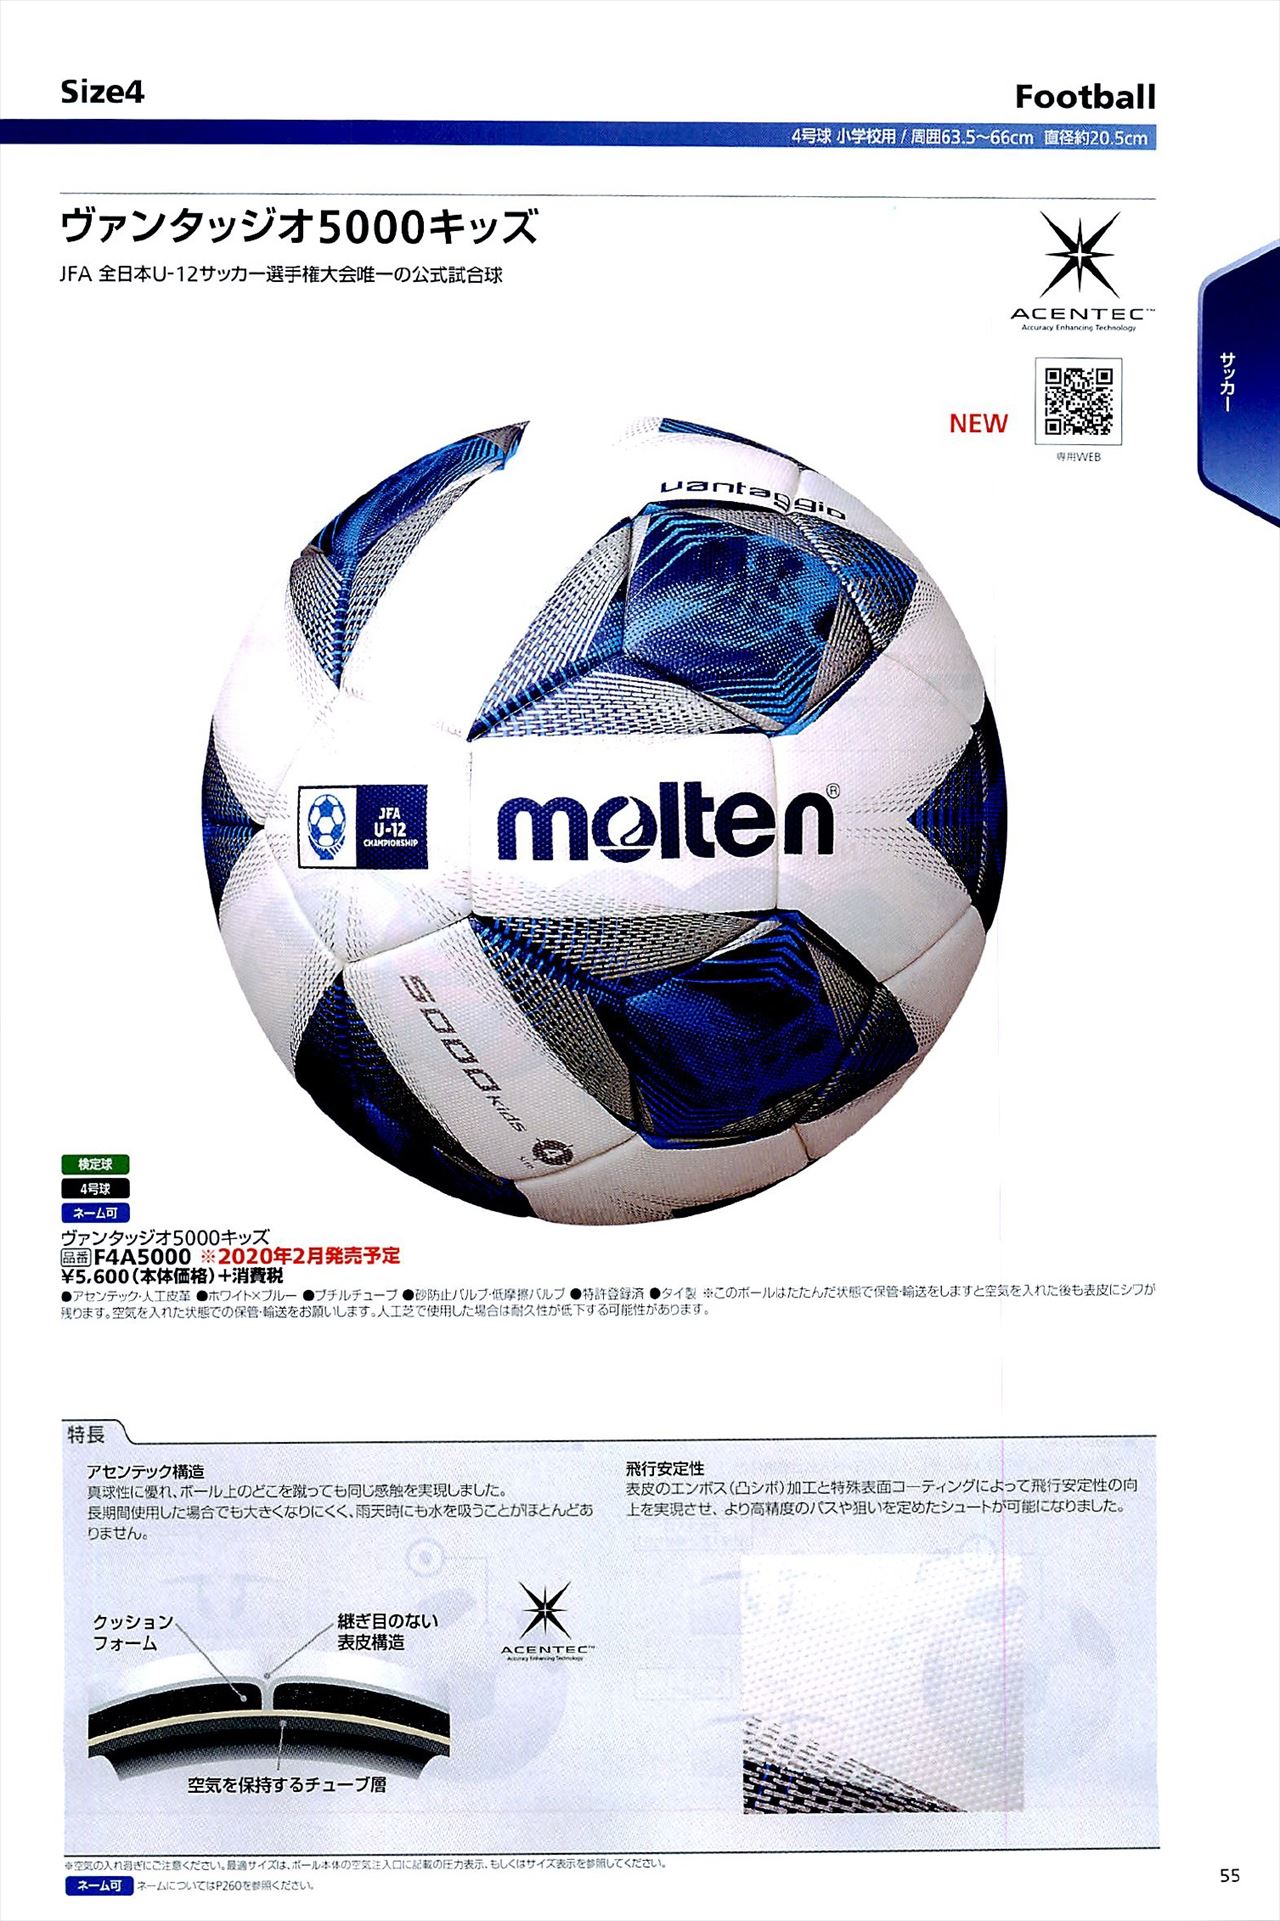 サッカーボール4号球は モルテンカタログ の ページ55 に掲載されています スポーツメーカーカタログ 目次ページ